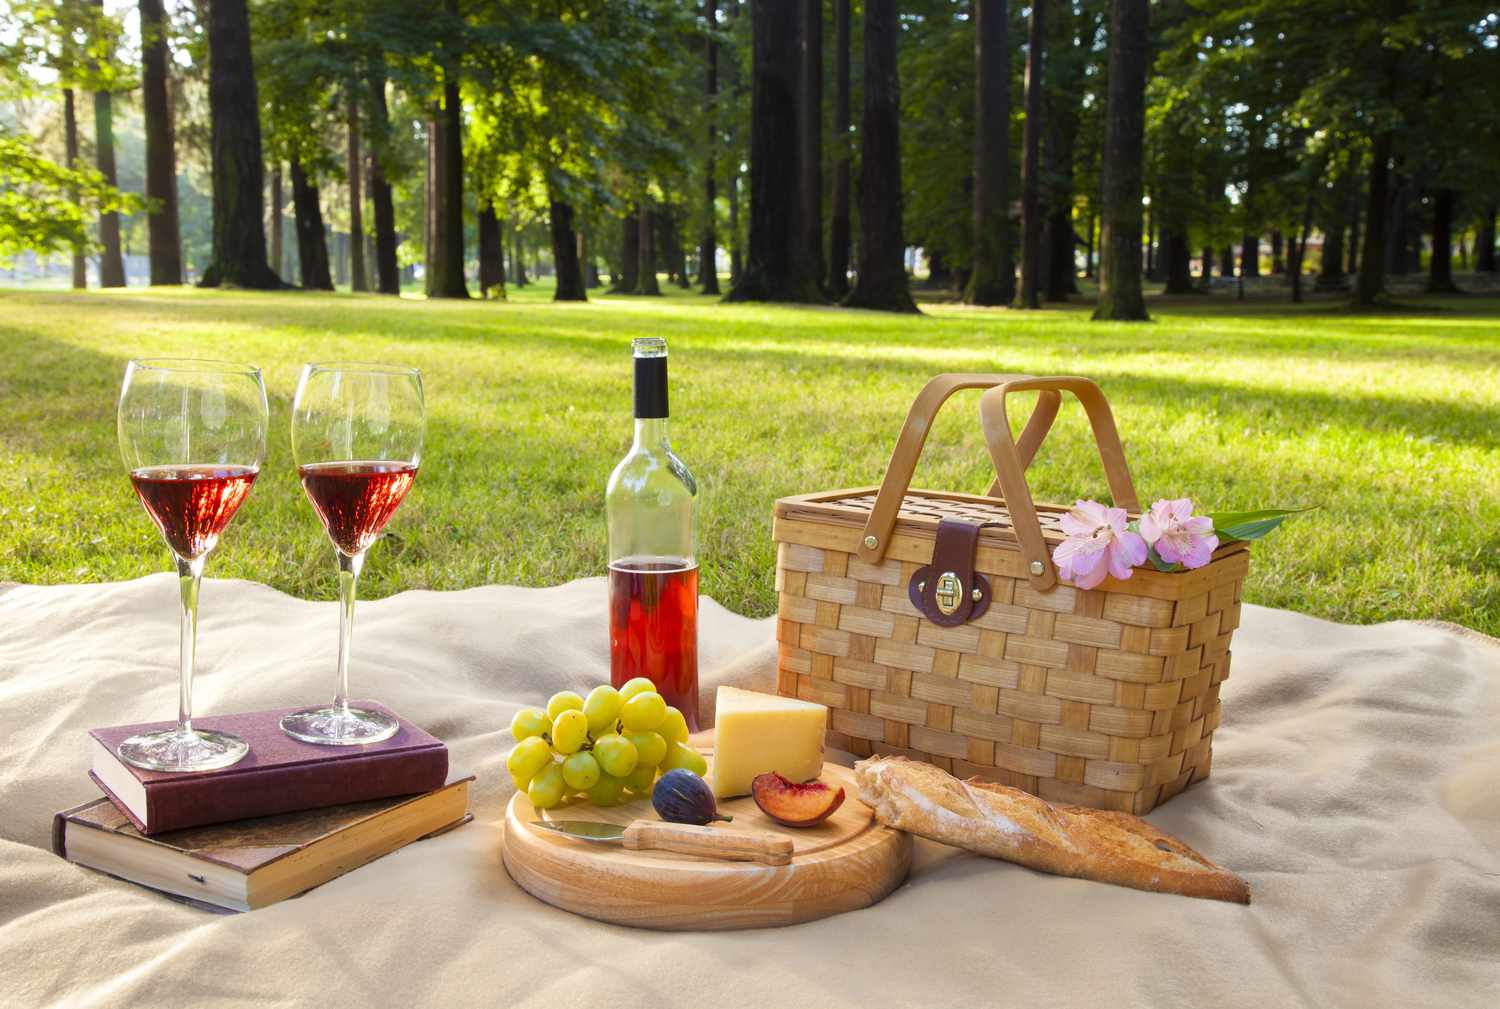 Vin, fromage, fruits, pain, et un panier de pique-nique sur une couverture sur l'herbe avec des arbres en arrière-plan